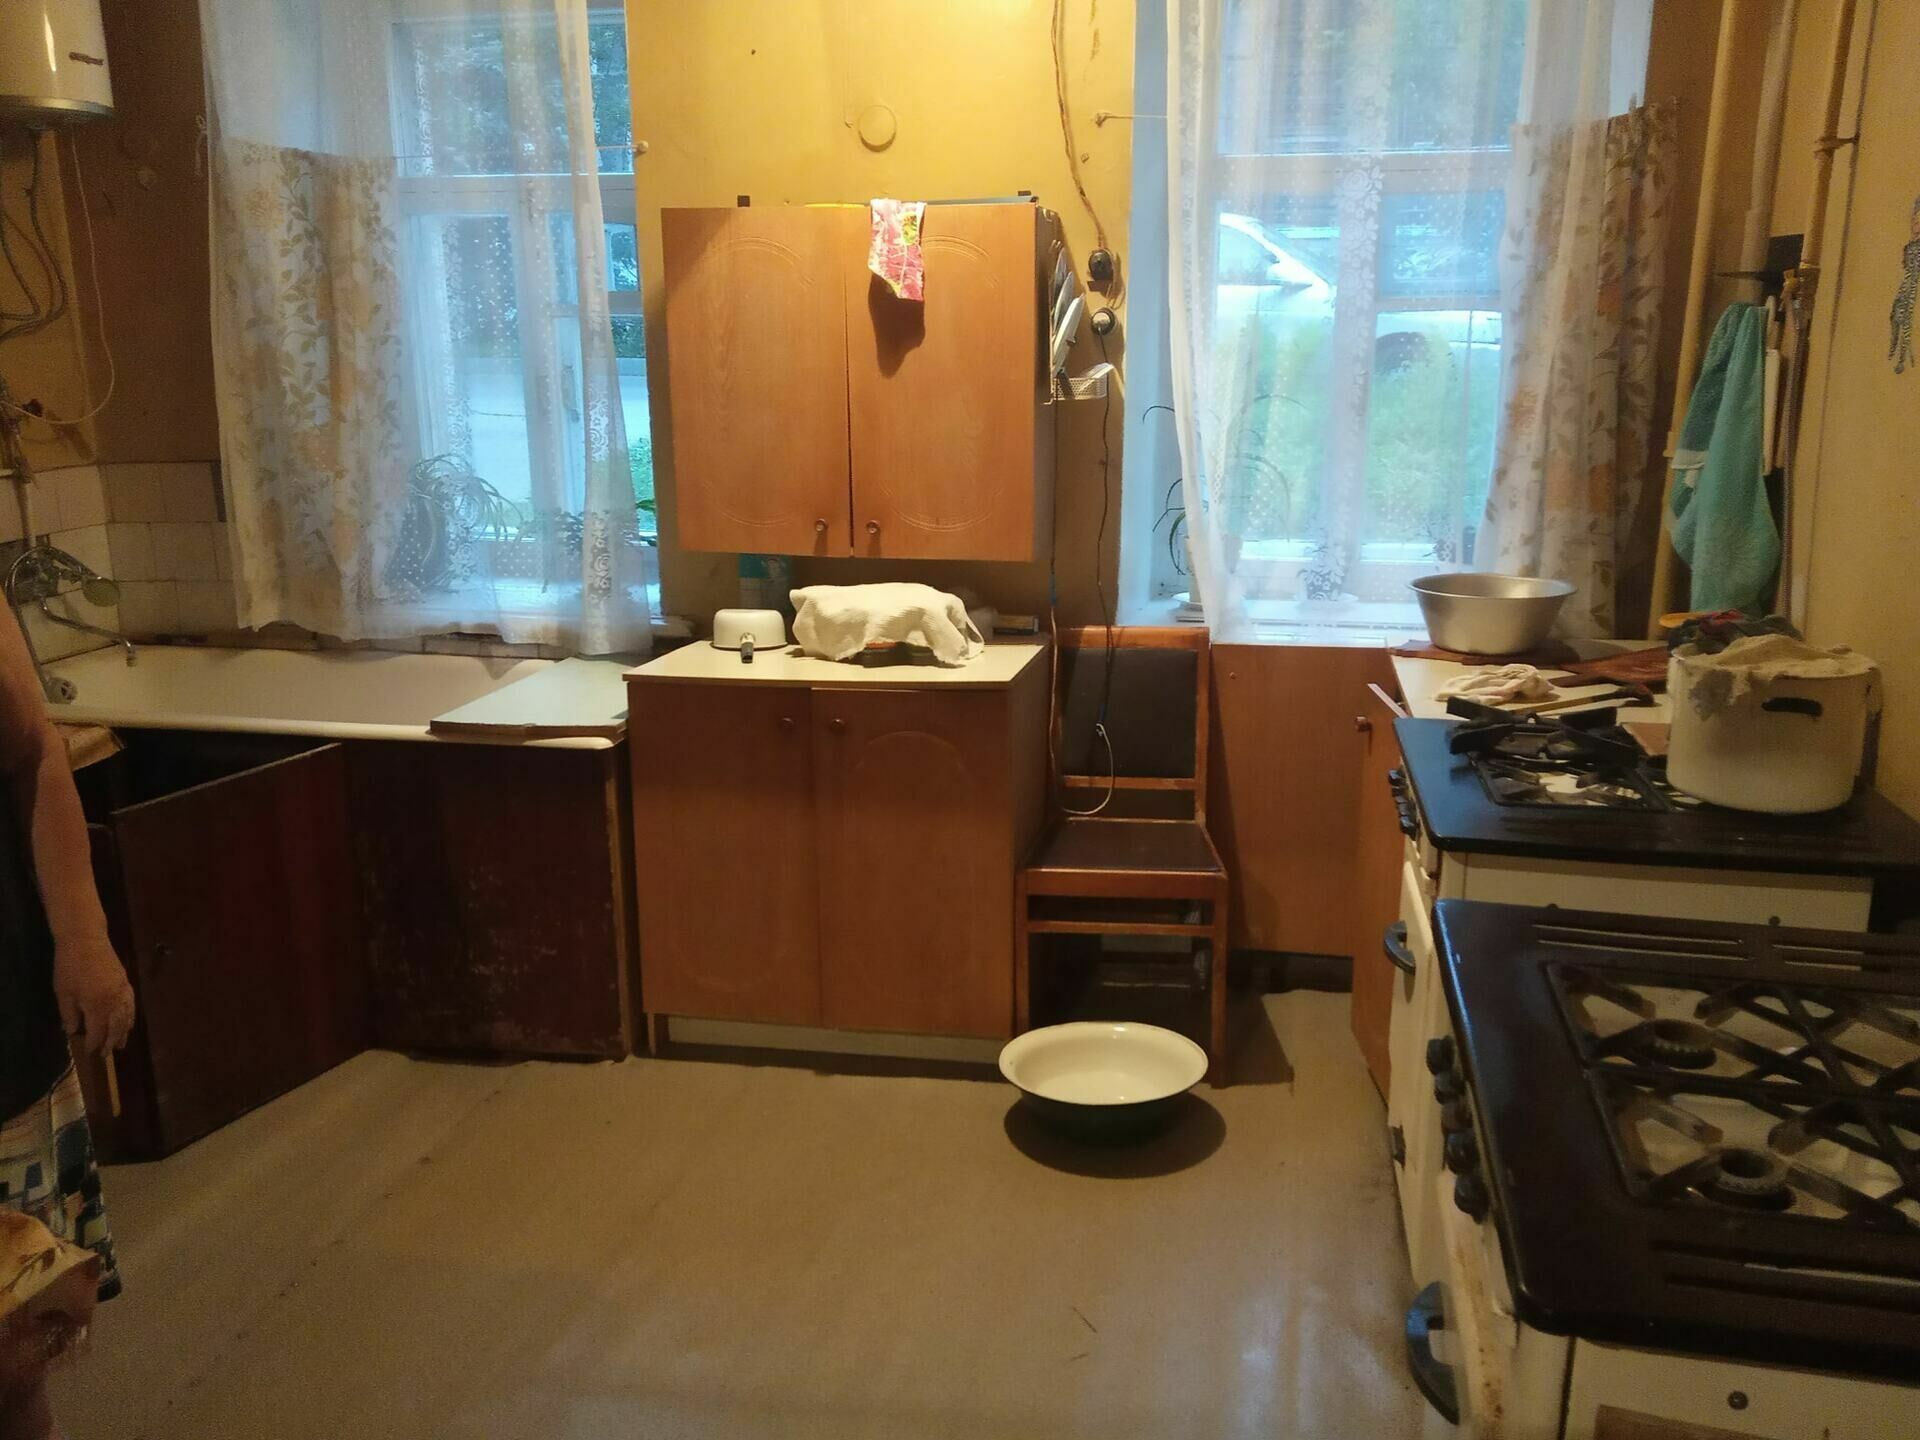 ФотКа дня: в нижегородской коммуналке ванна стоит прямо на кухне